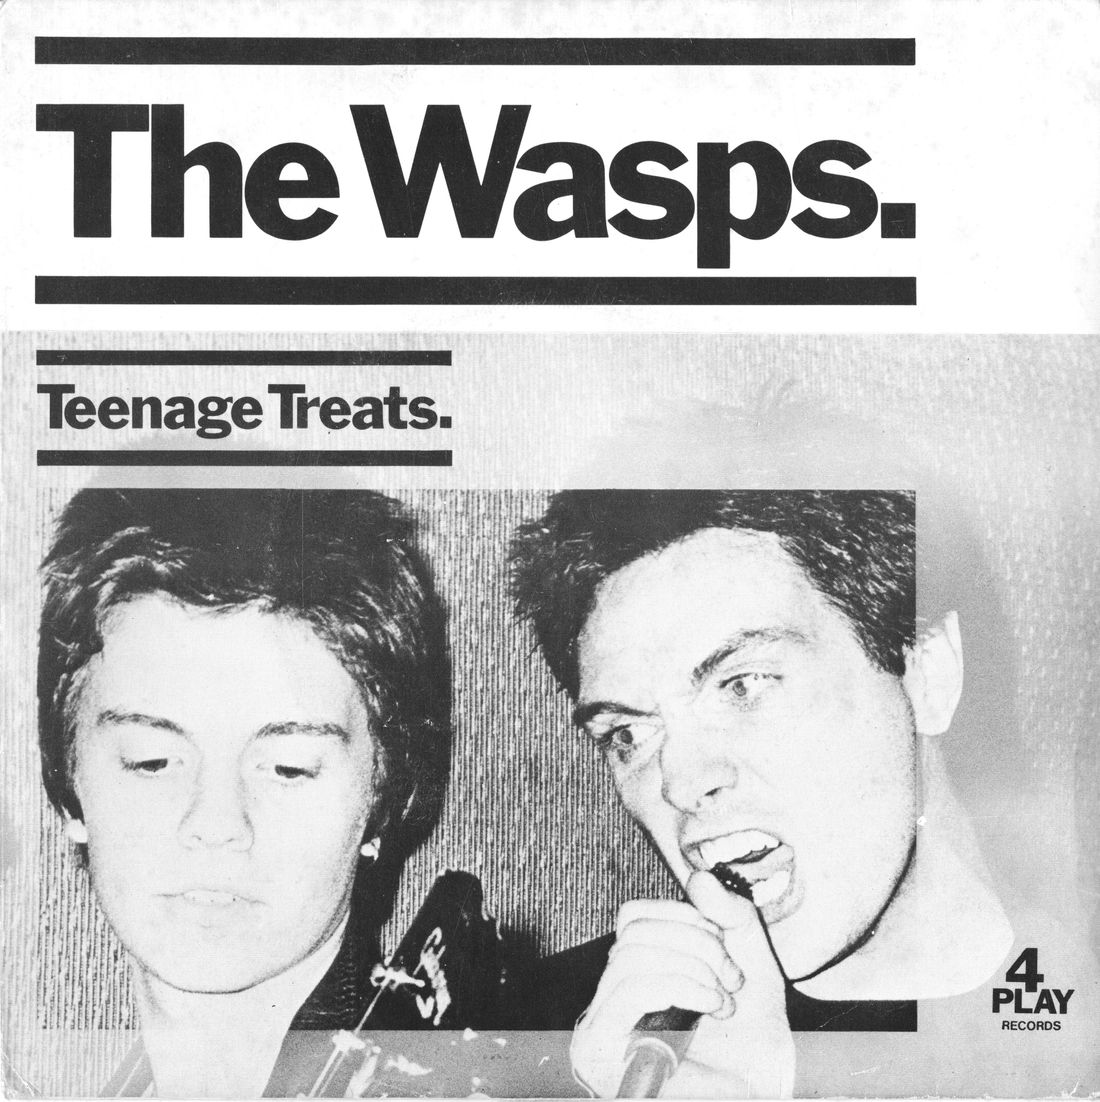 "Teenage Treats, 7" 1977 4Play Records
